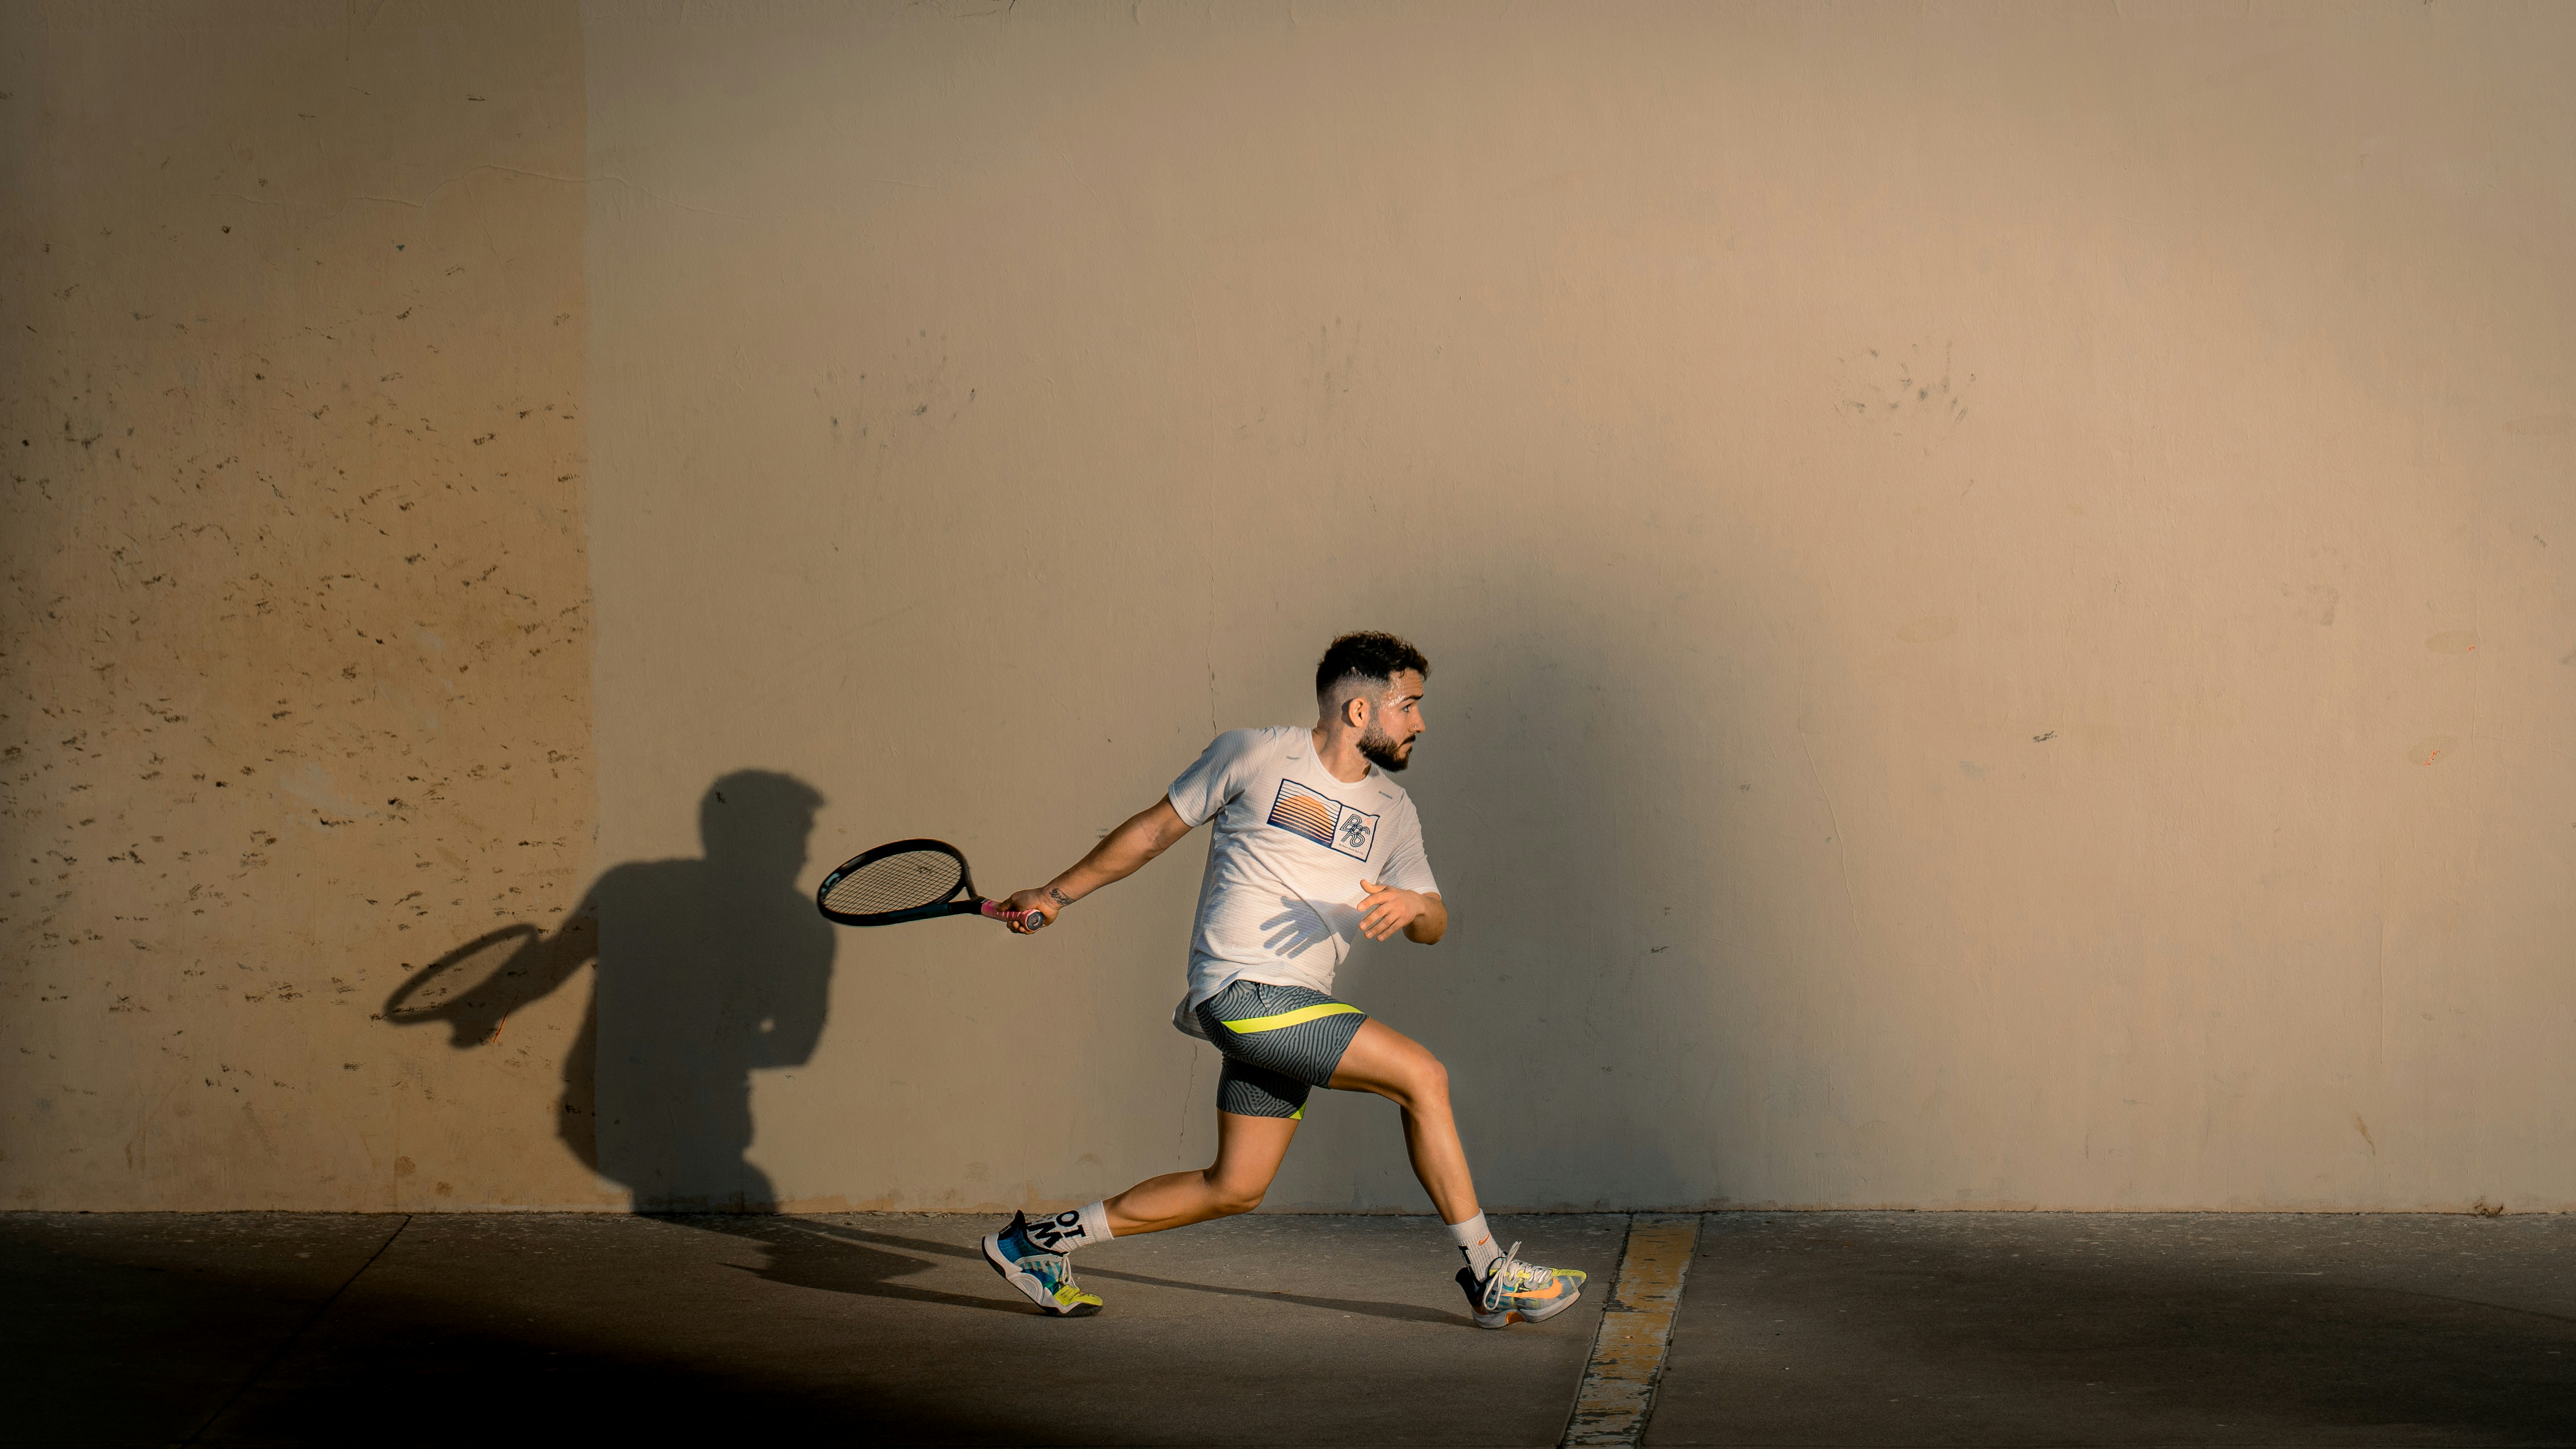 kako se igra squash